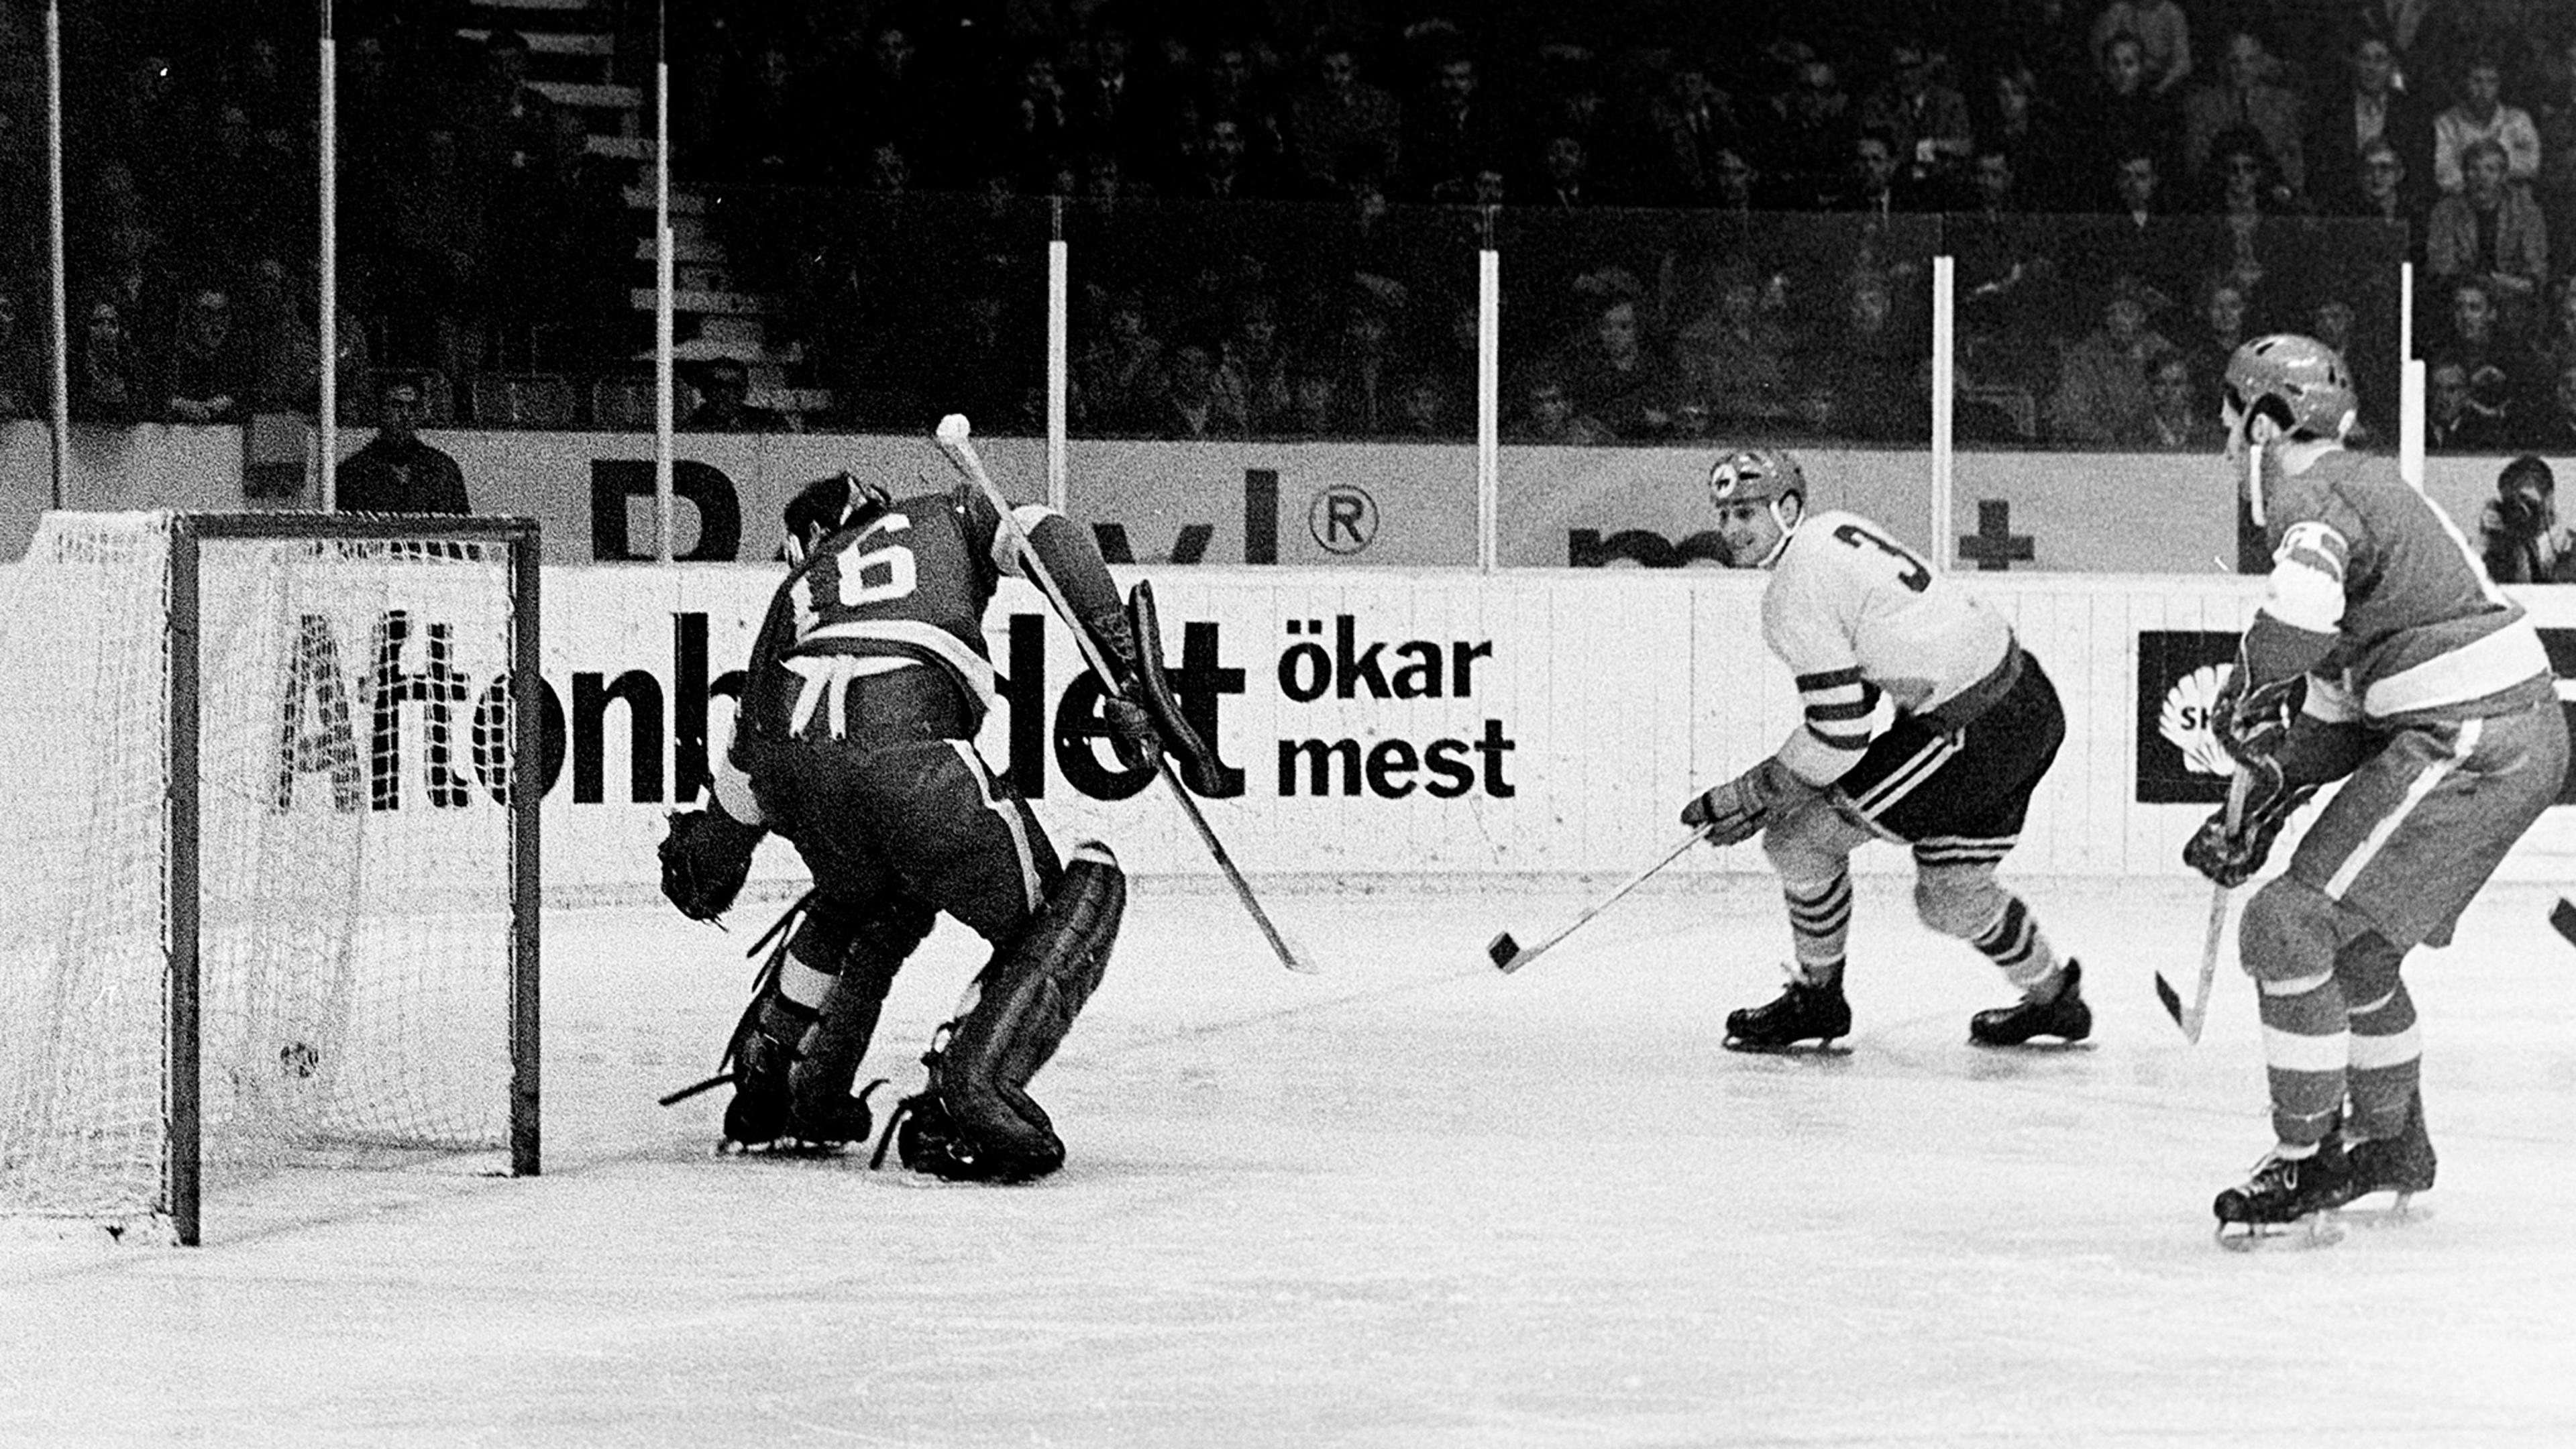 Historien om SHL går tillbaka till 1922. Men det är först från 1974 ishockeyligan börjar likna dagens form. Den kallades först Elitserien. Här ser vi en bild från ett spännande ögonblick på isen i SM i ishockey någon gång på 60-talet. 